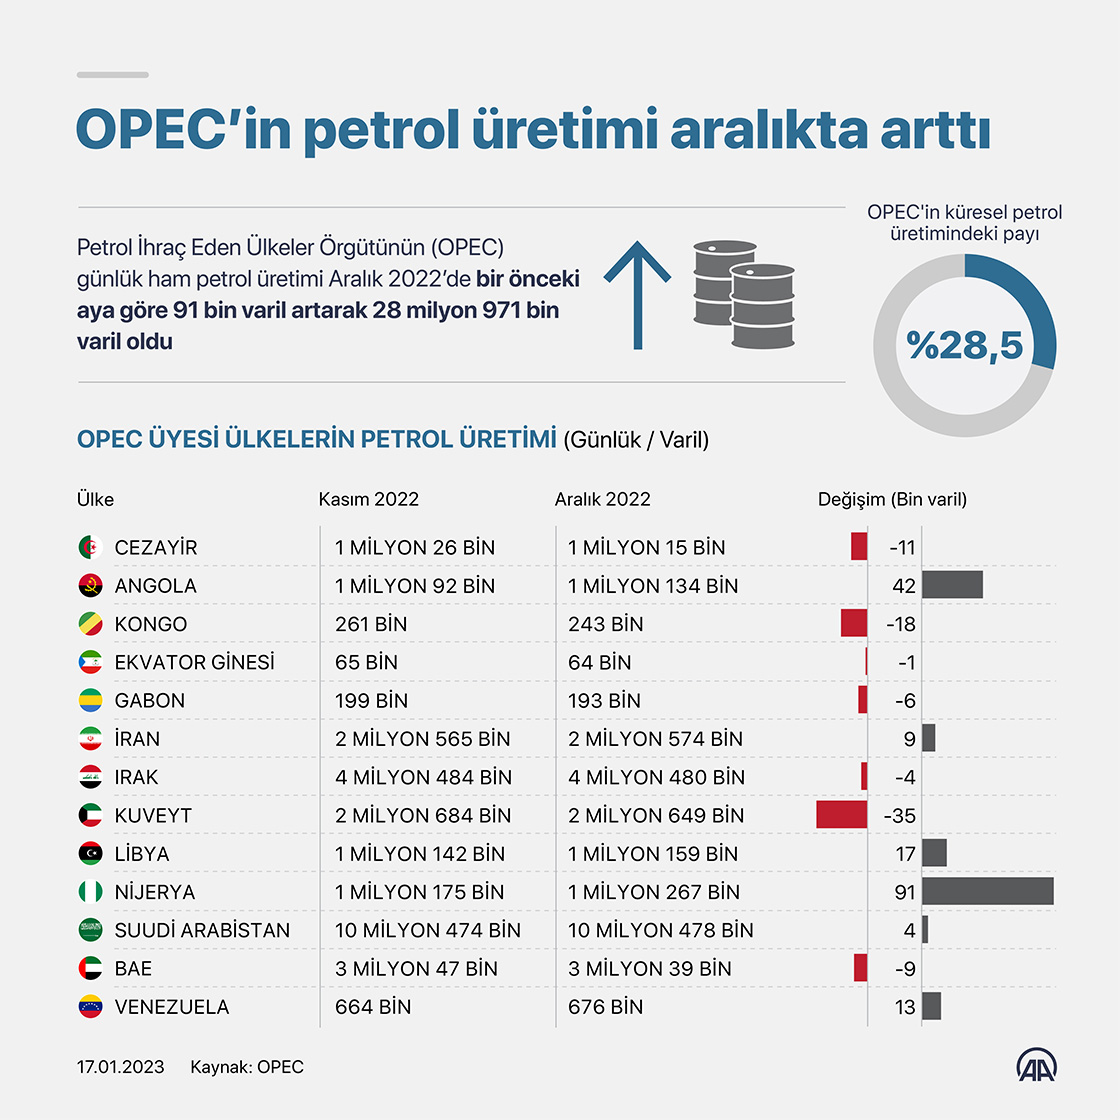 OPEC’in petrol üretimi aralıkta arttı